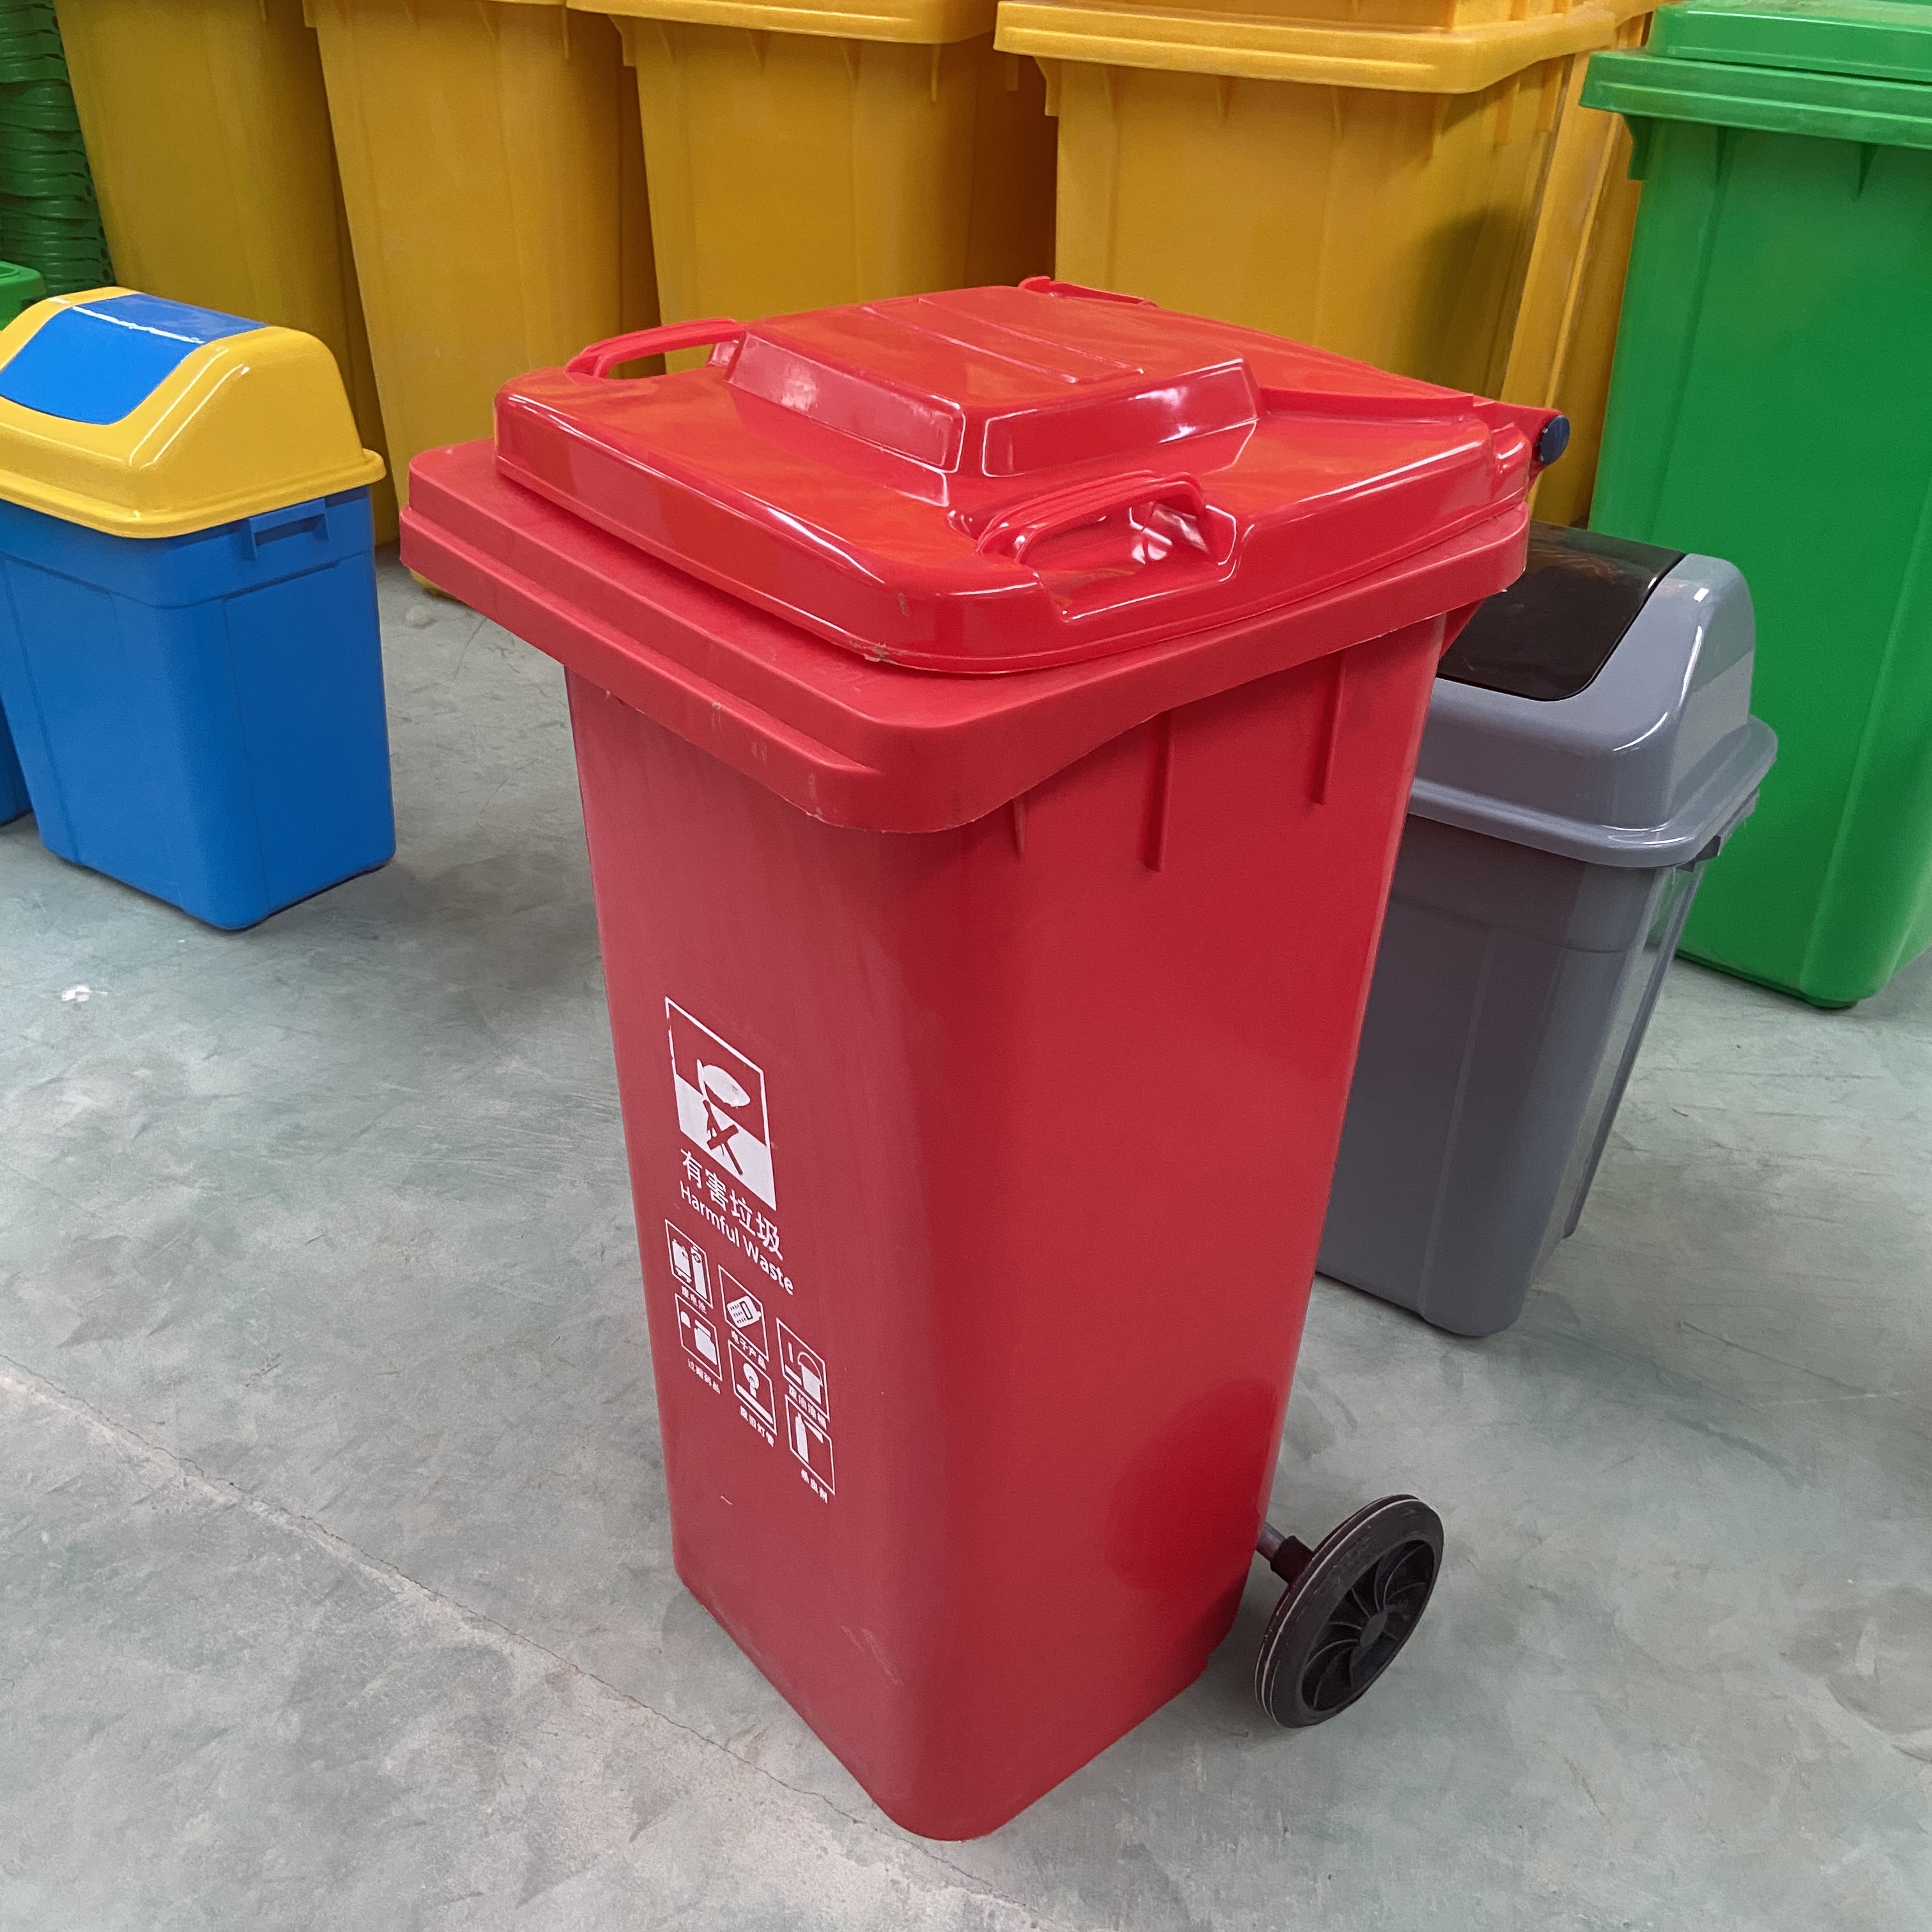 街道环卫垃圾桶厂家直销 塑料环保垃圾桶价格